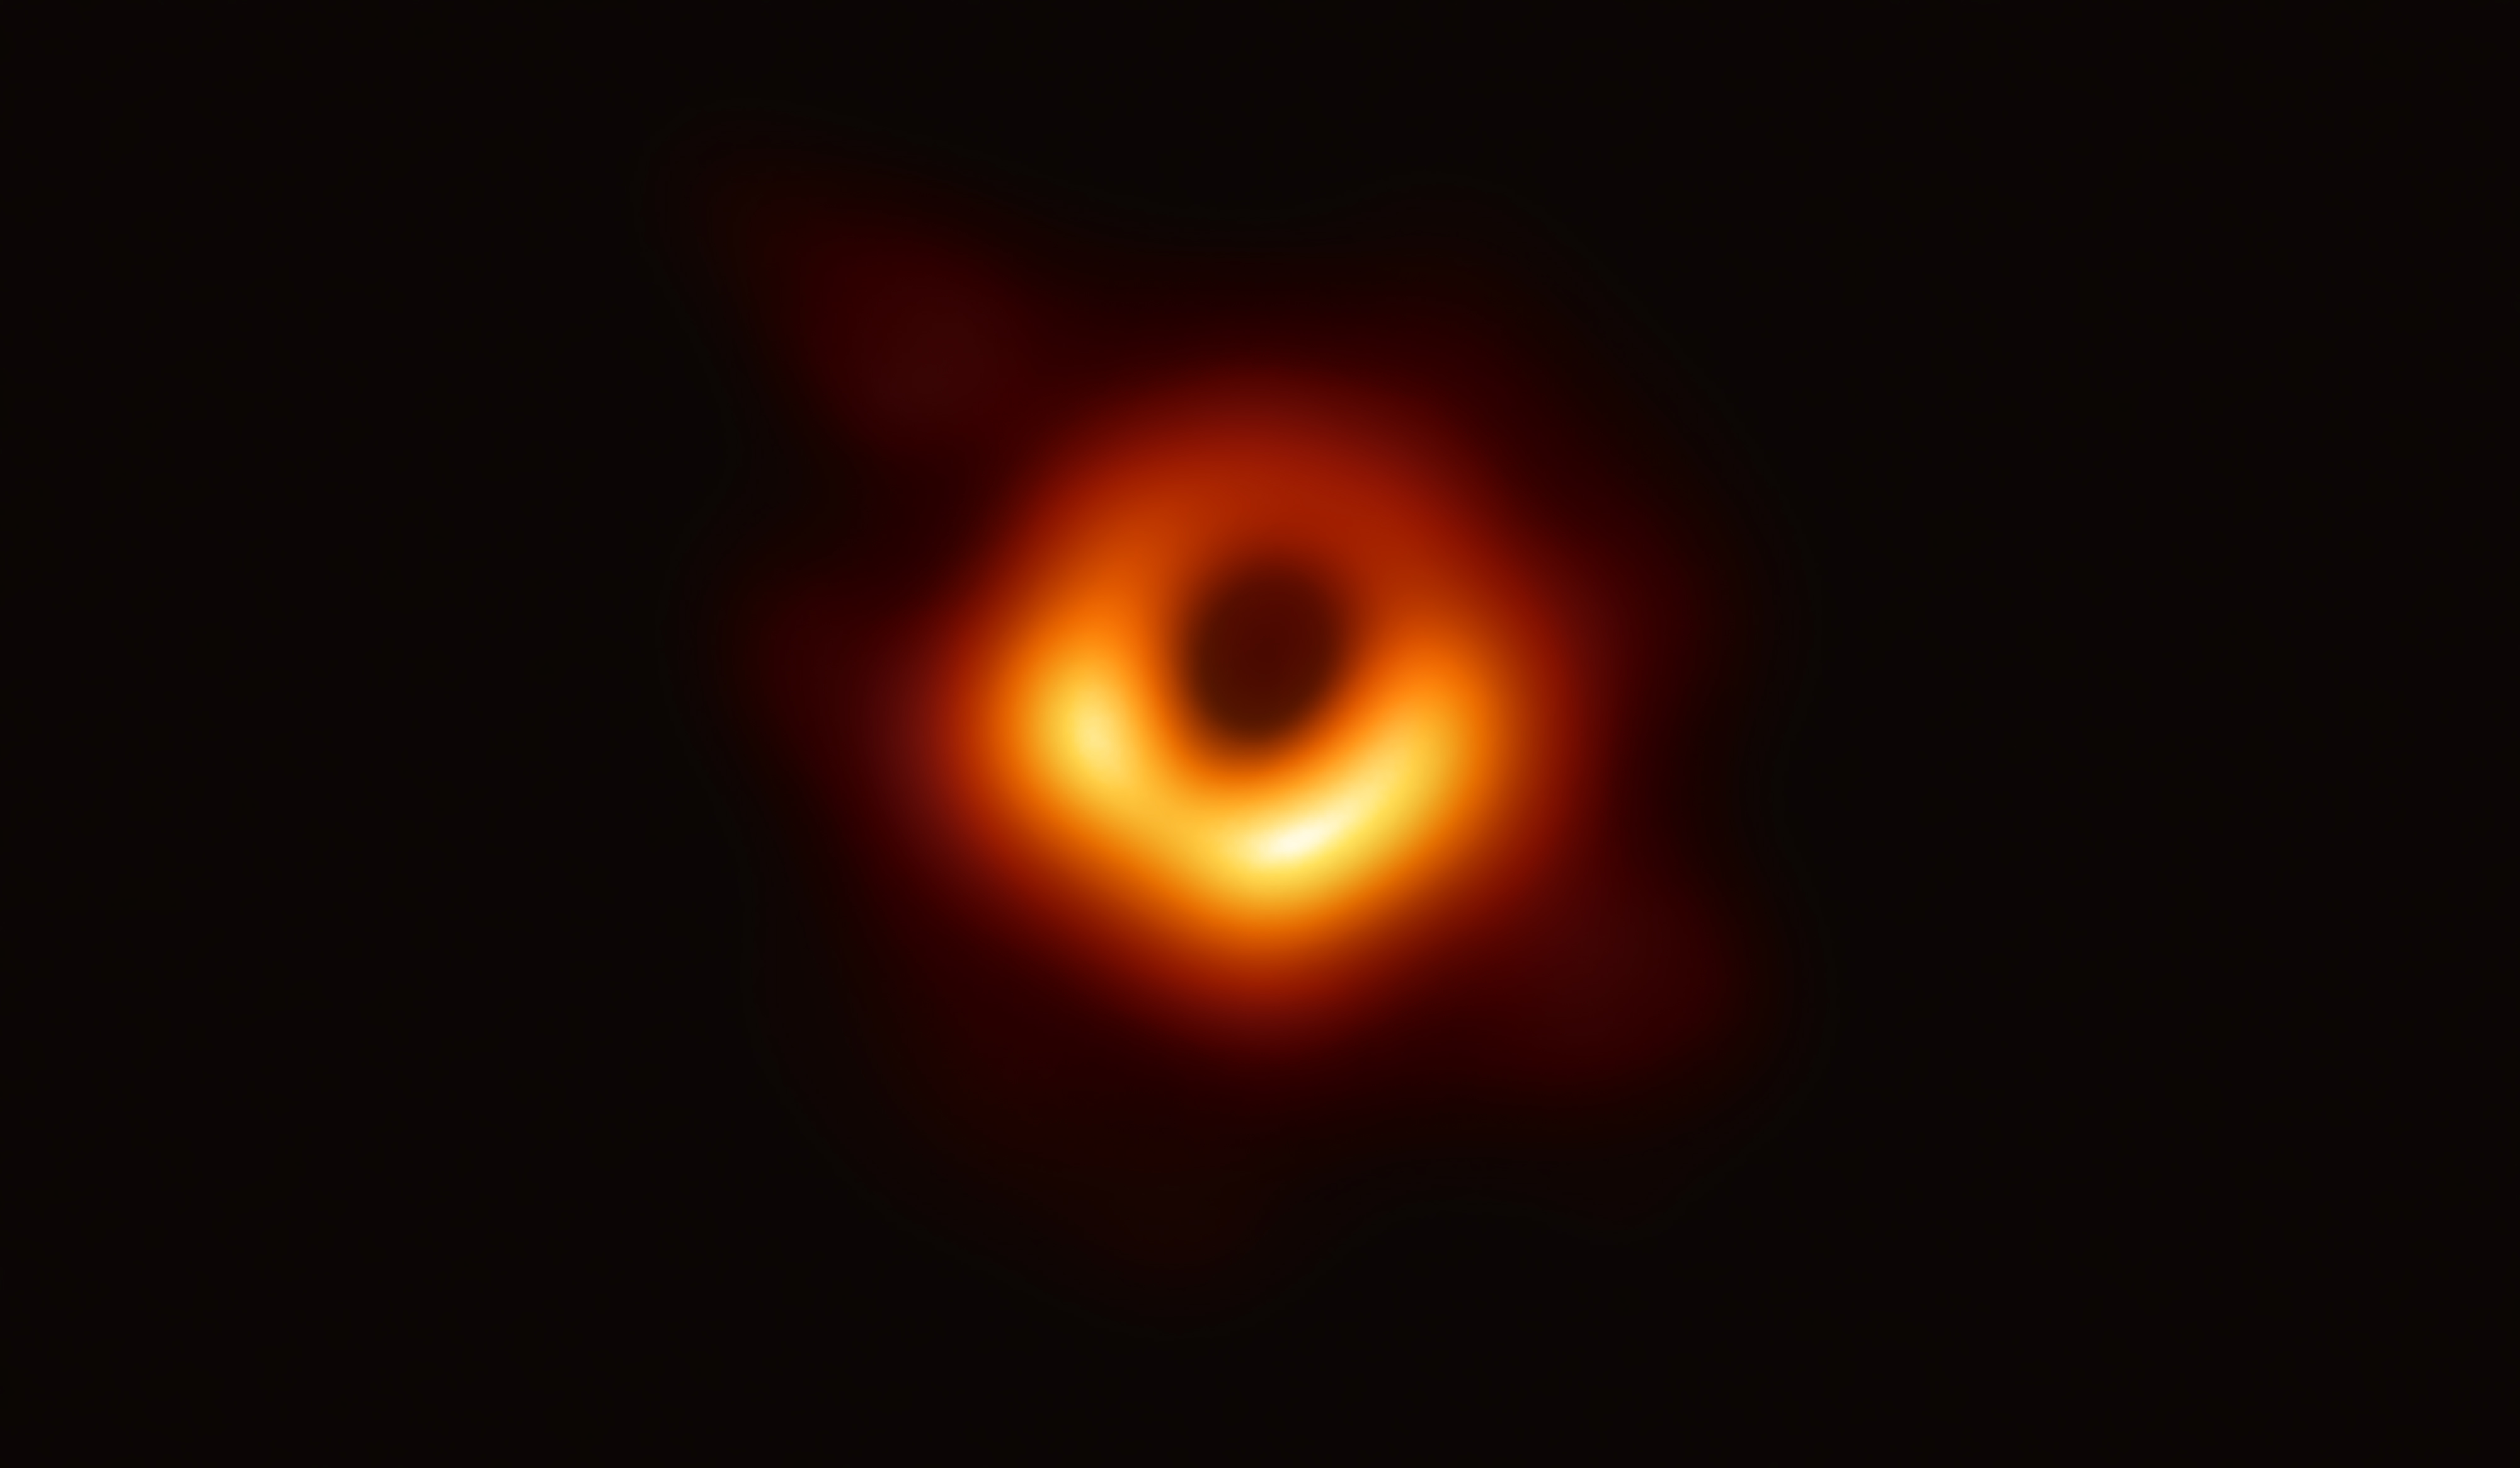 A black hole.